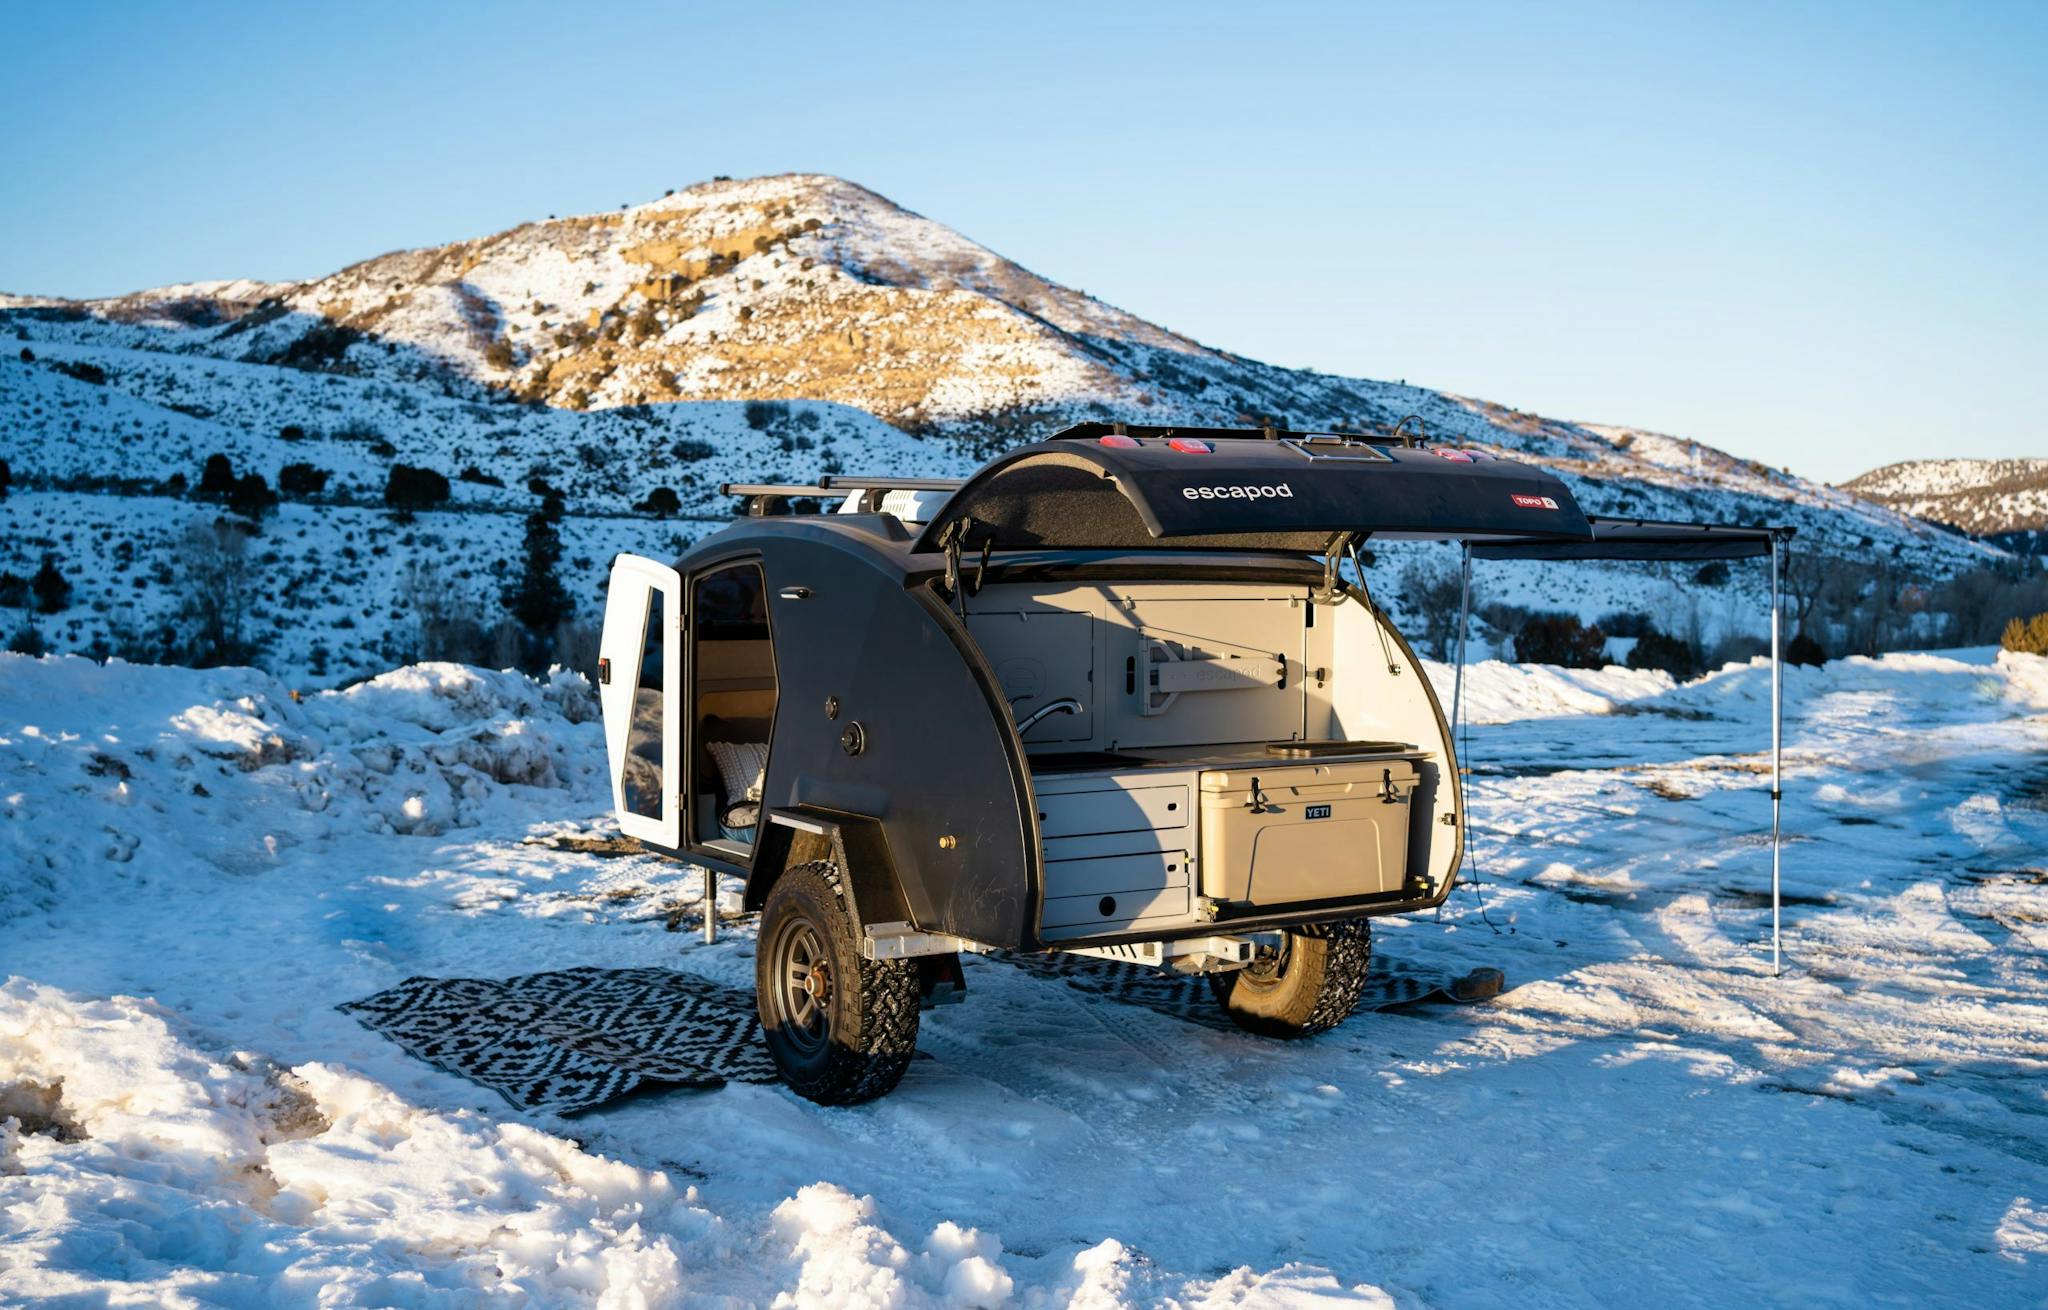 A navy blue teardrop camper parked in a winter landscape.